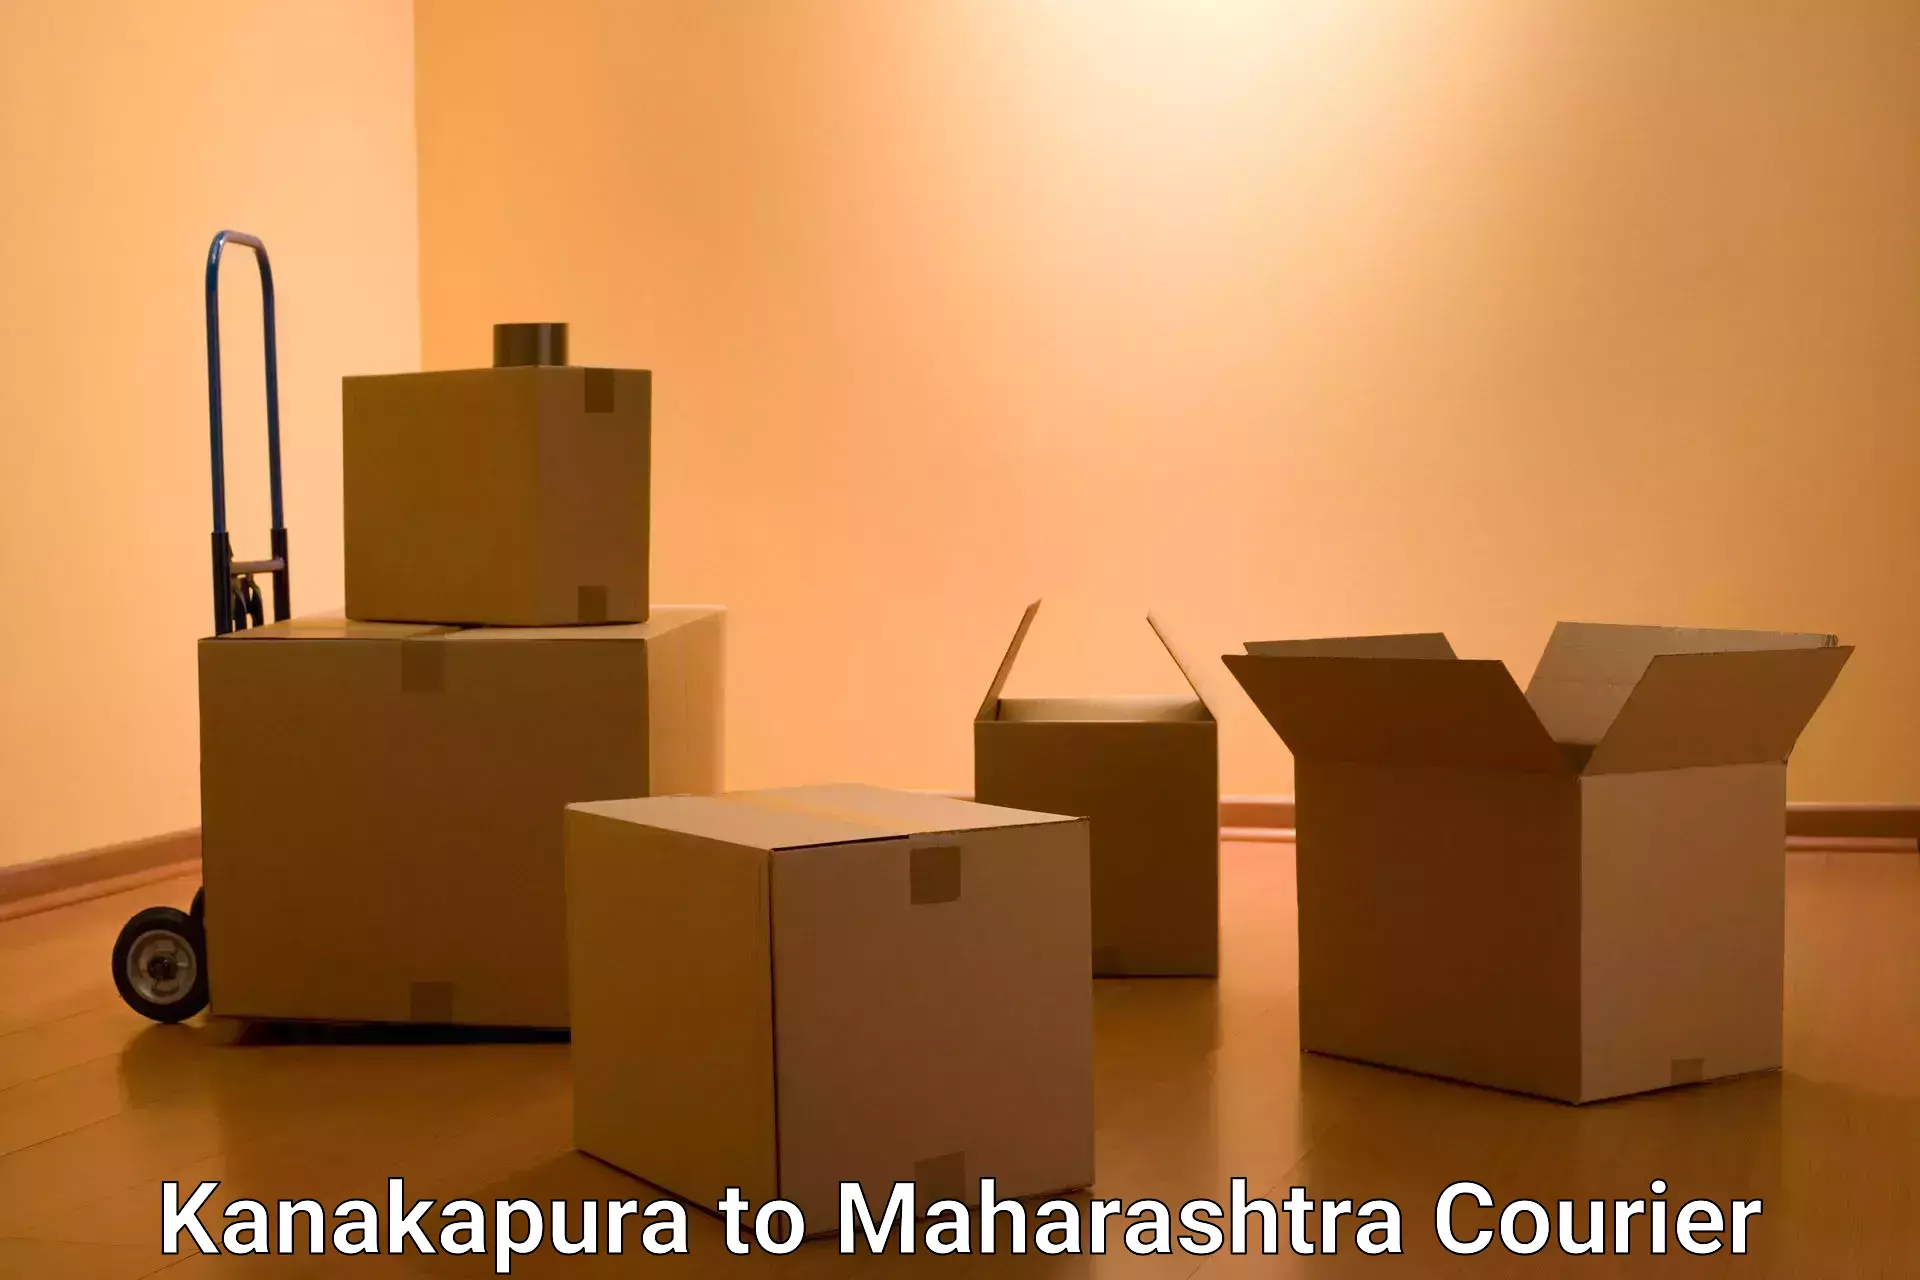 State-of-the-art courier technology Kanakapura to Maharashtra